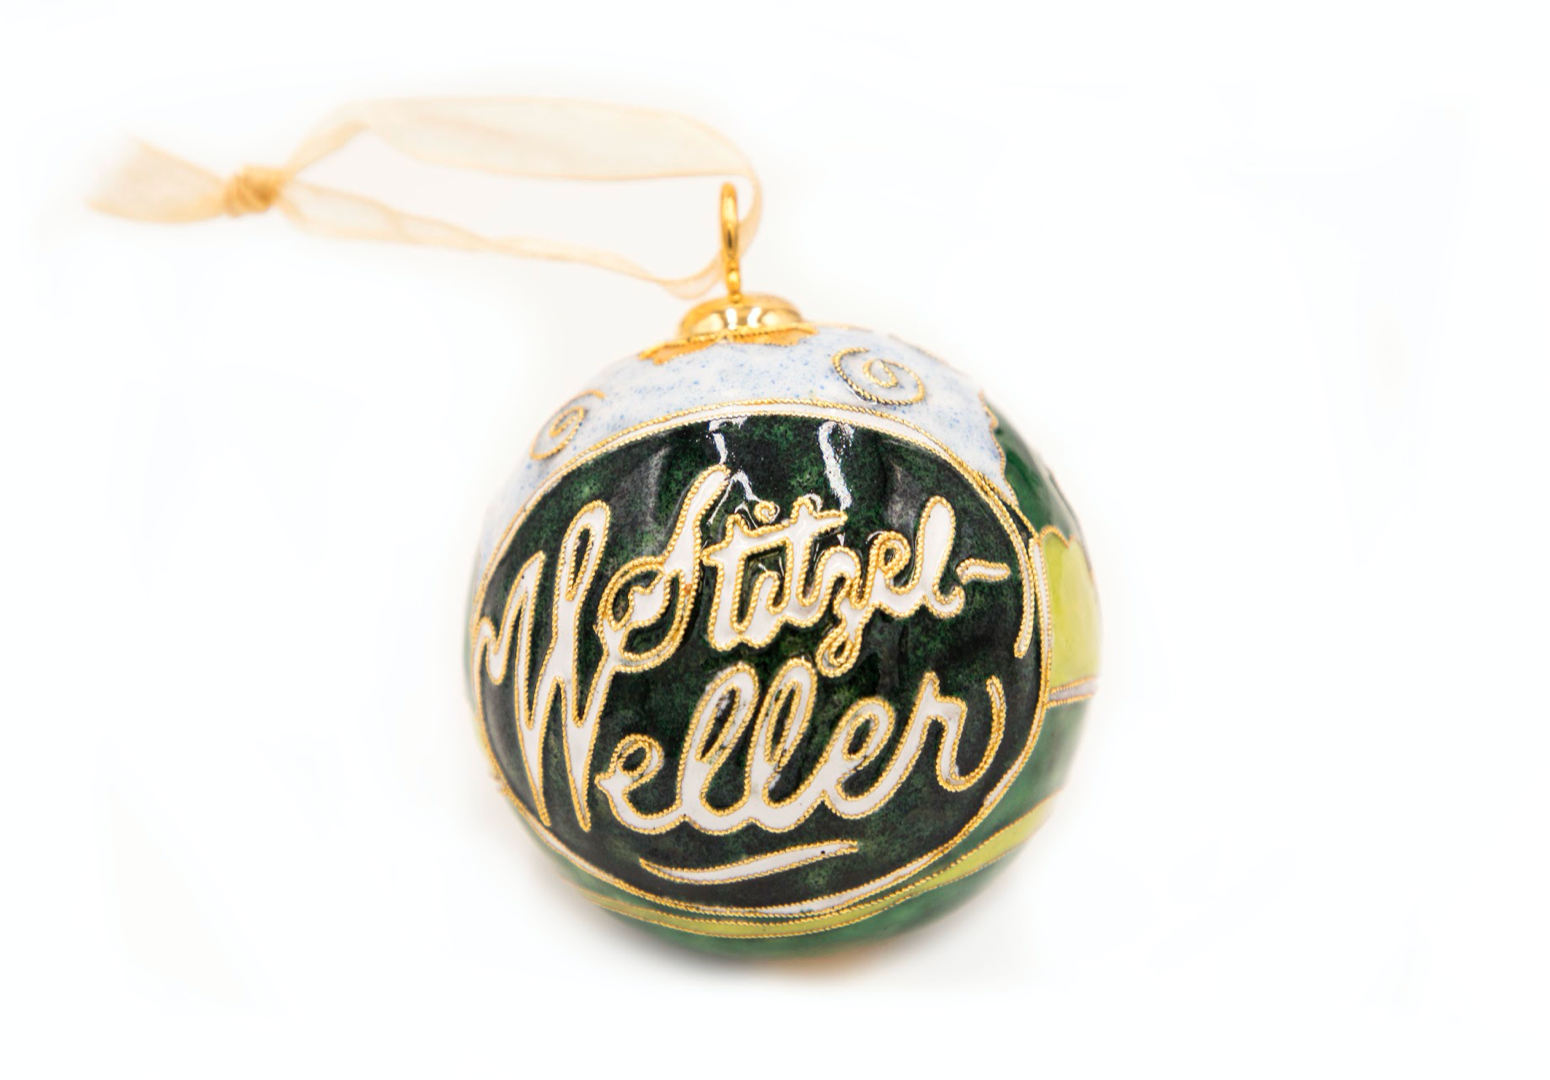 Stitzel-Weller Kitty Keller Ornament